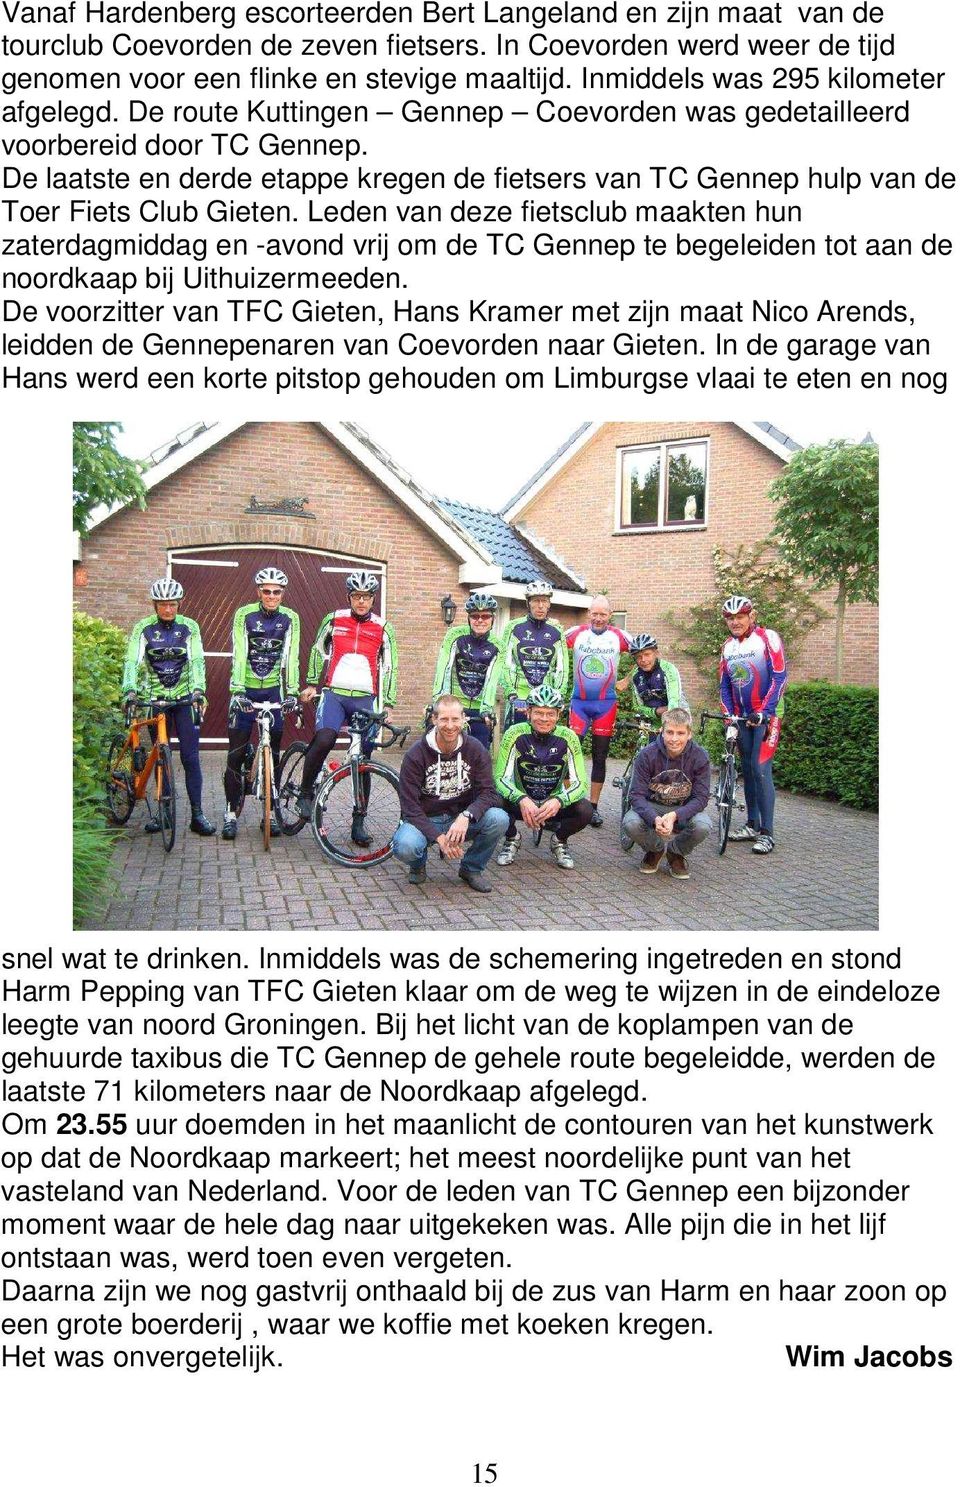 De laatste en derde etappe kregen de fietsers van TC Gennep hulp van de Toer Fiets Club Gieten.